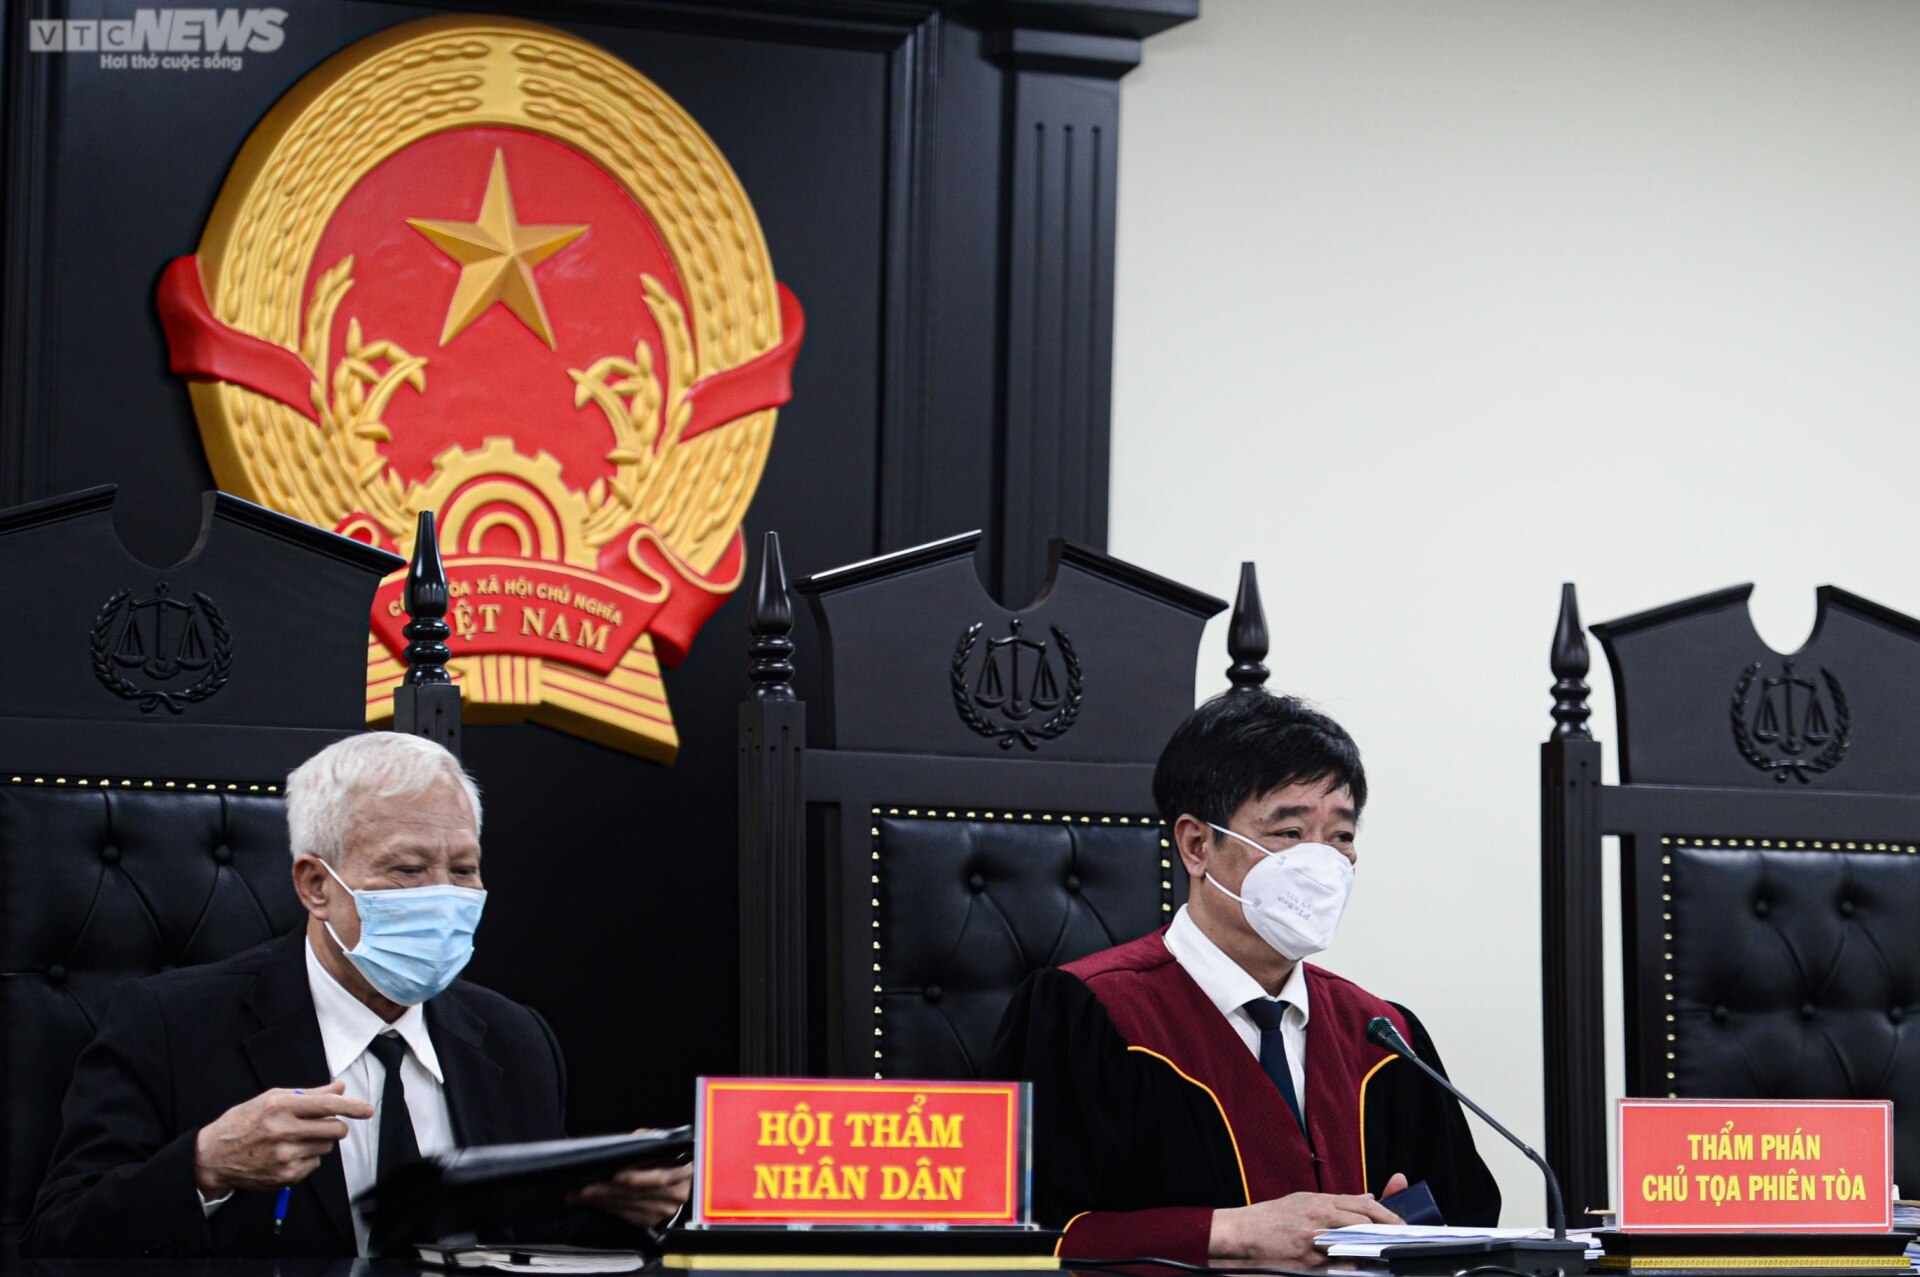 Cựu Giám đốc Bệnh viện Tim Hà Nội Nguyễn Quang Tuấn tóc bạc trắng tới tòa - Ảnh 4.